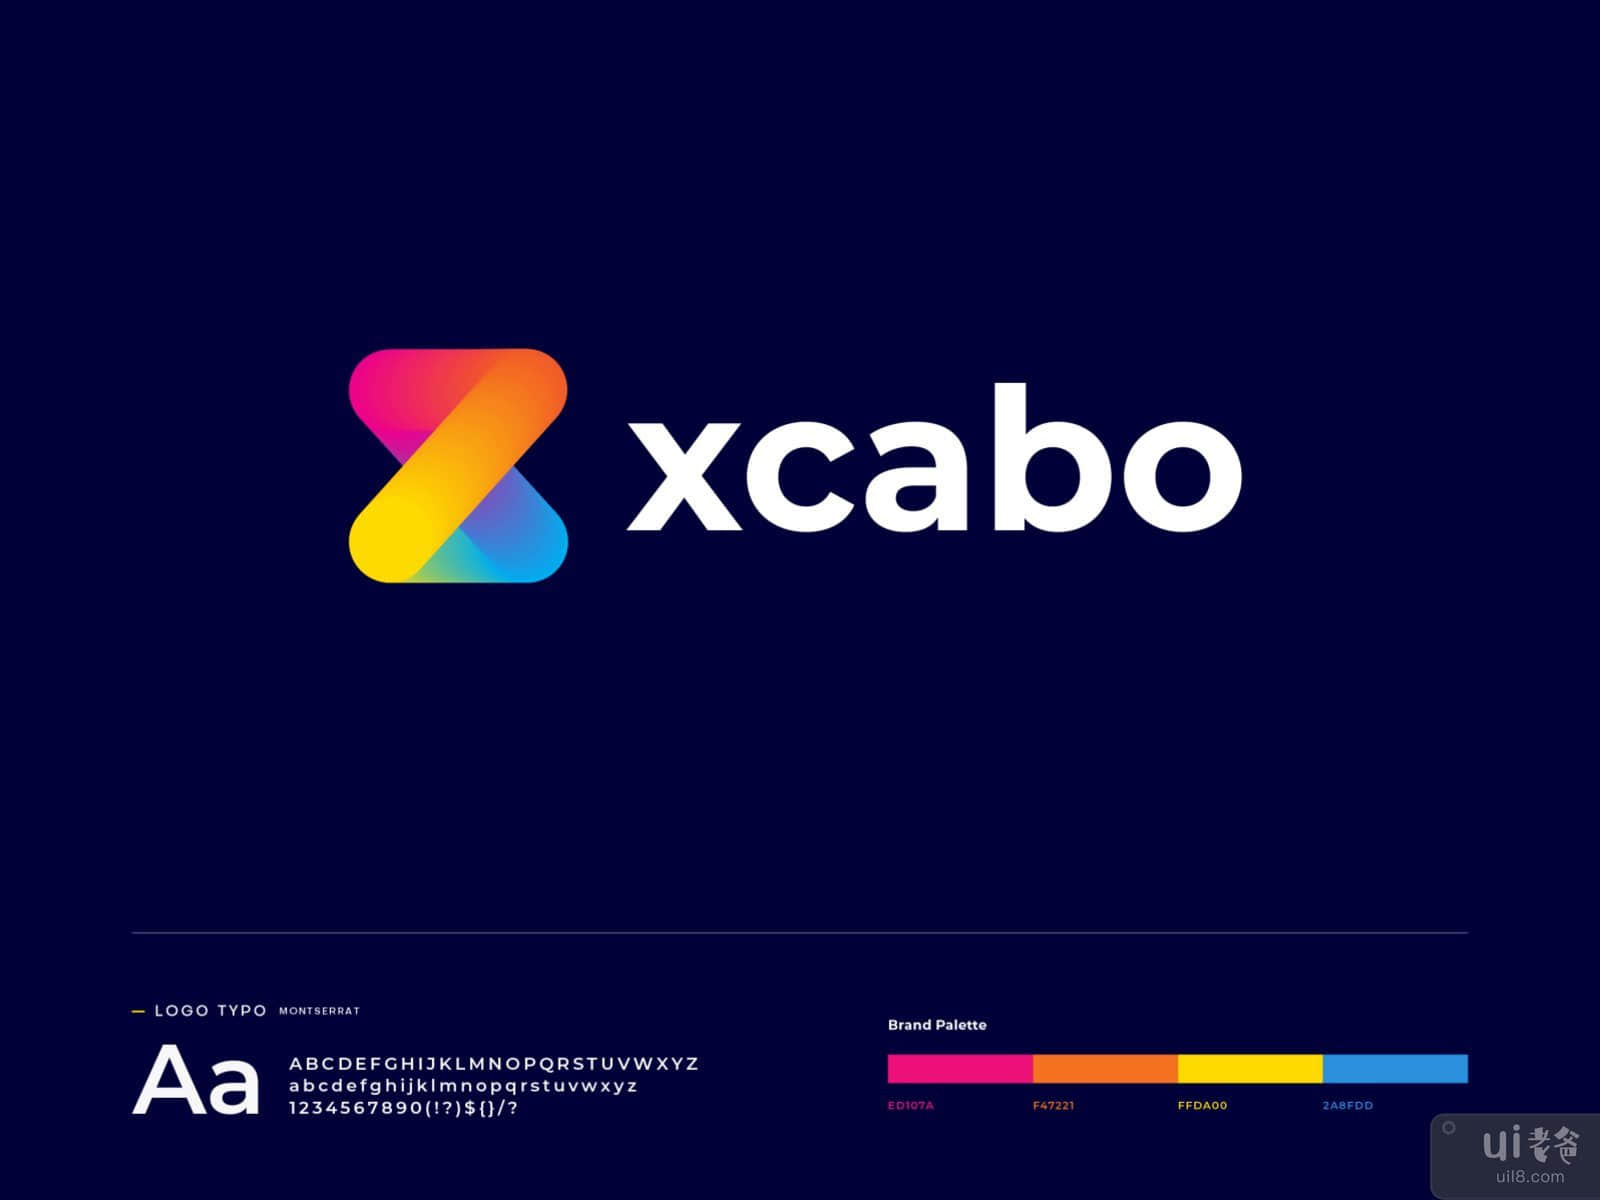 xcabo - logo design